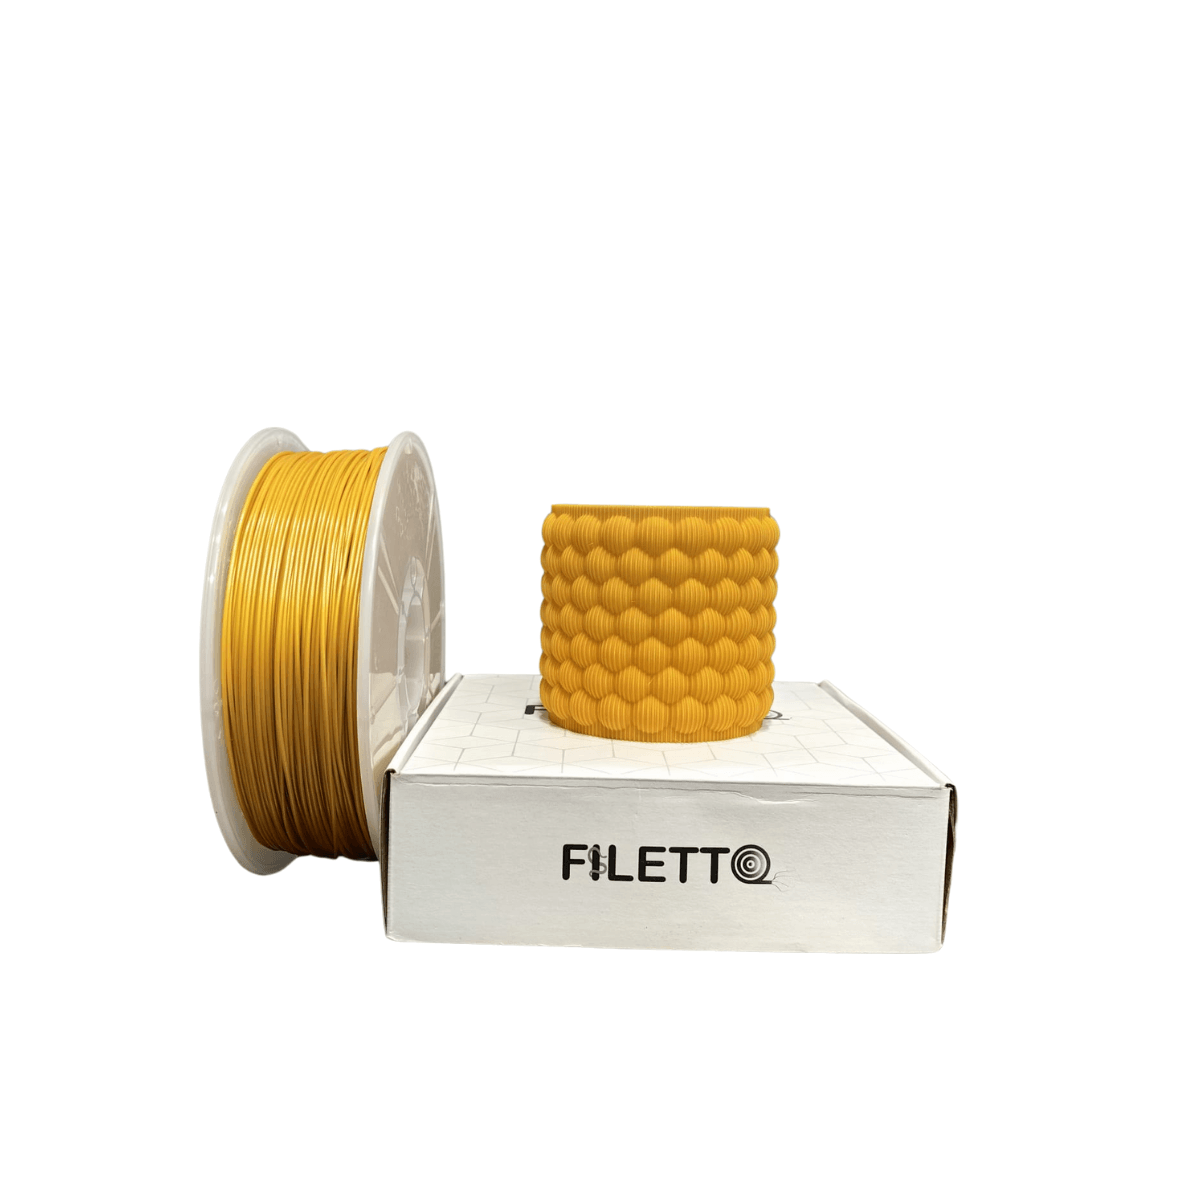 Filetto Pla+ Filament 1.75mm 1 KG - Gold